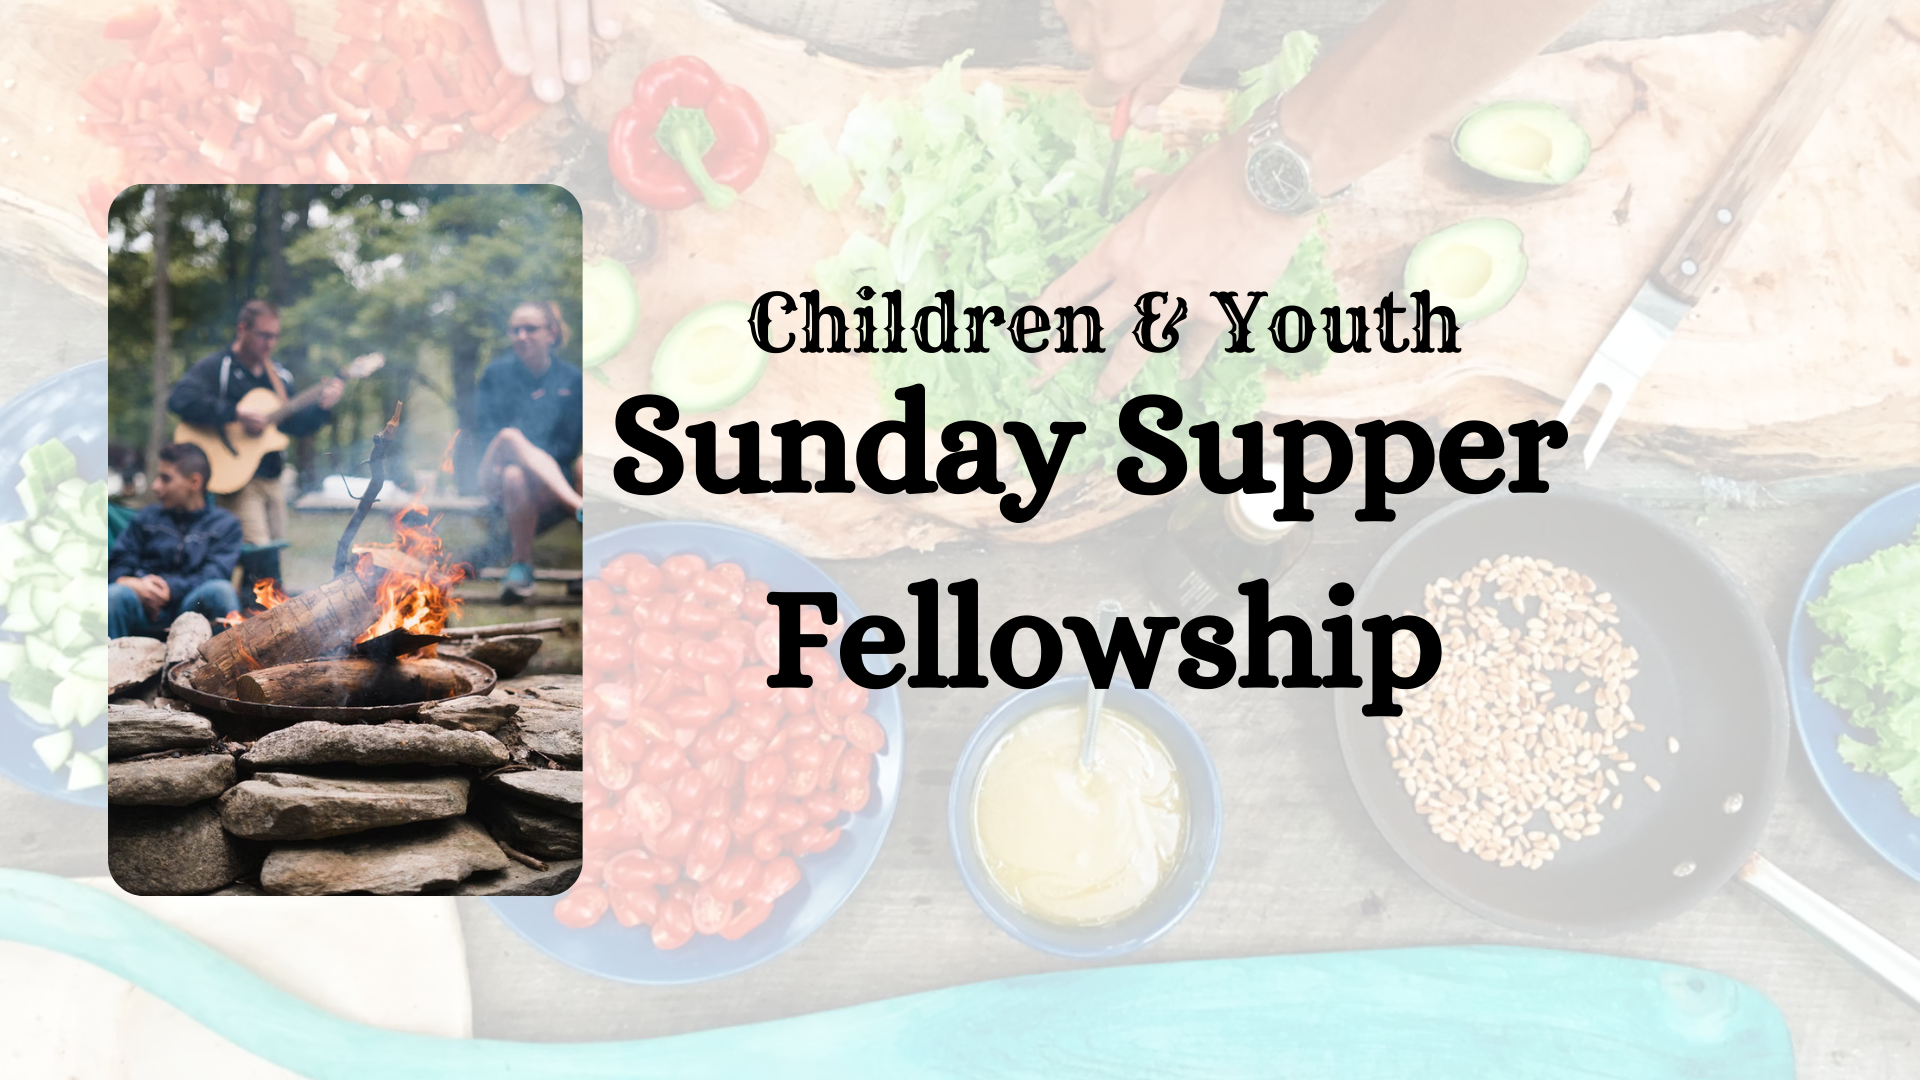 Sunday Supper Fellowship